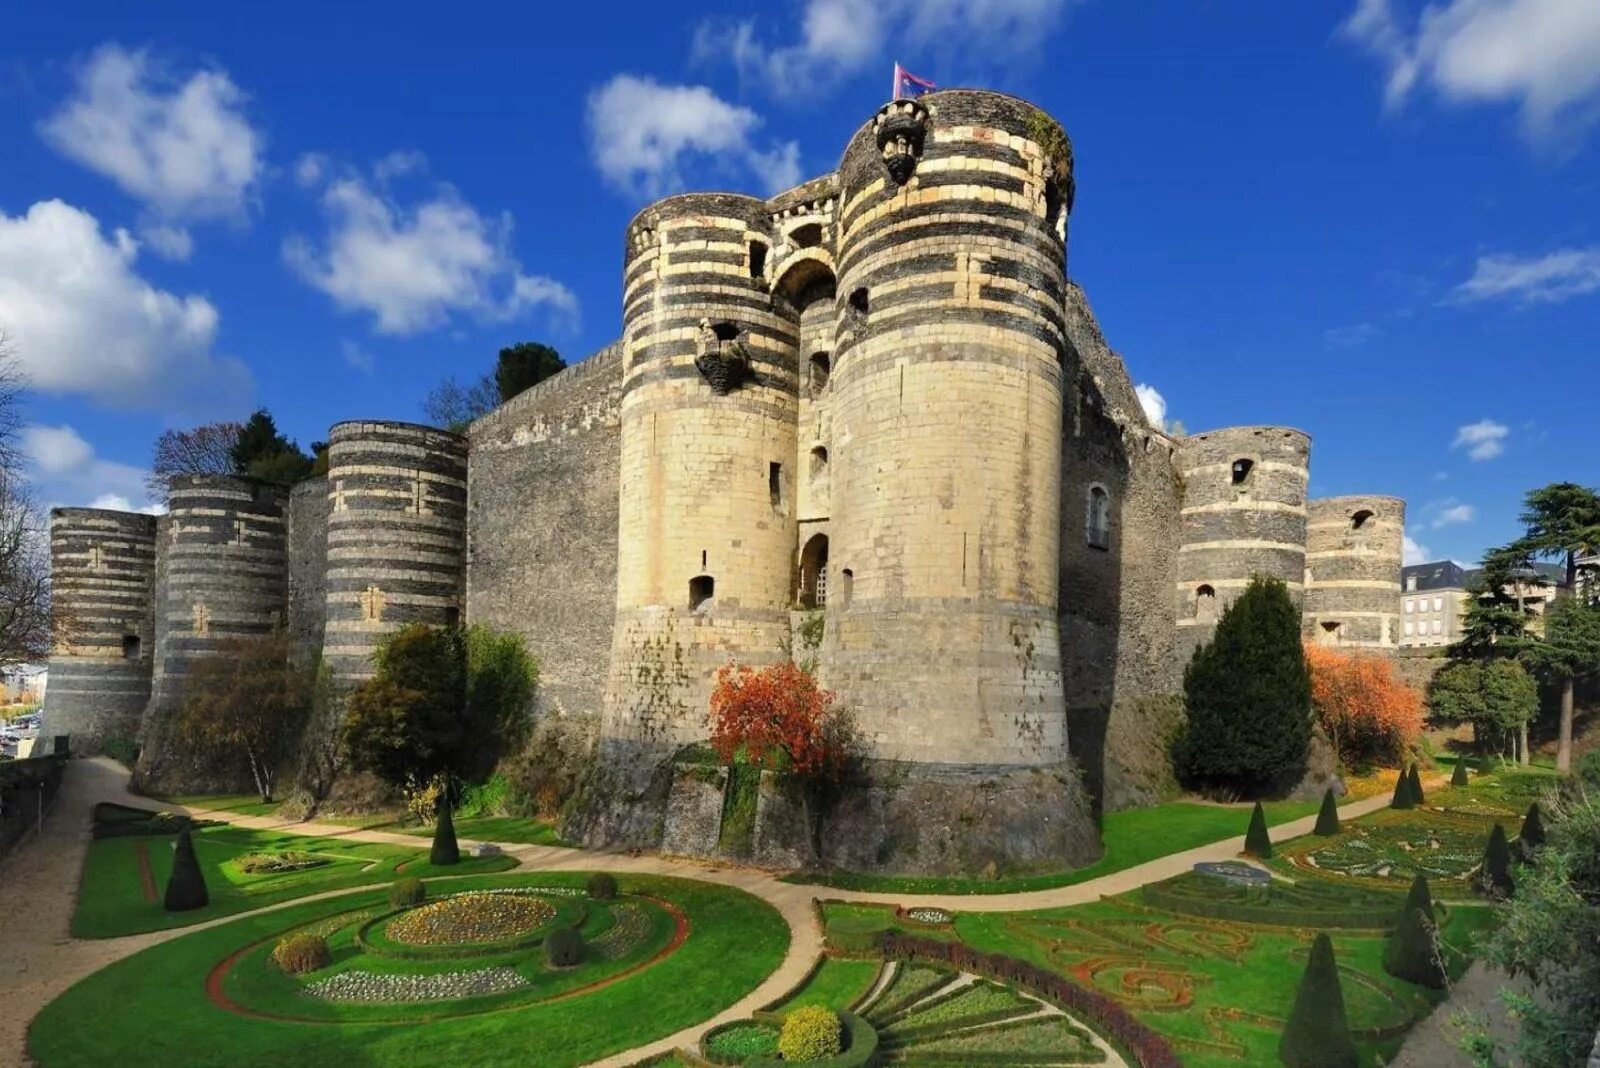 Анже. Замок Анже Франция. Chateau d'Angers замок. Город Анжер Франция. Анжуйский замок во Франции.